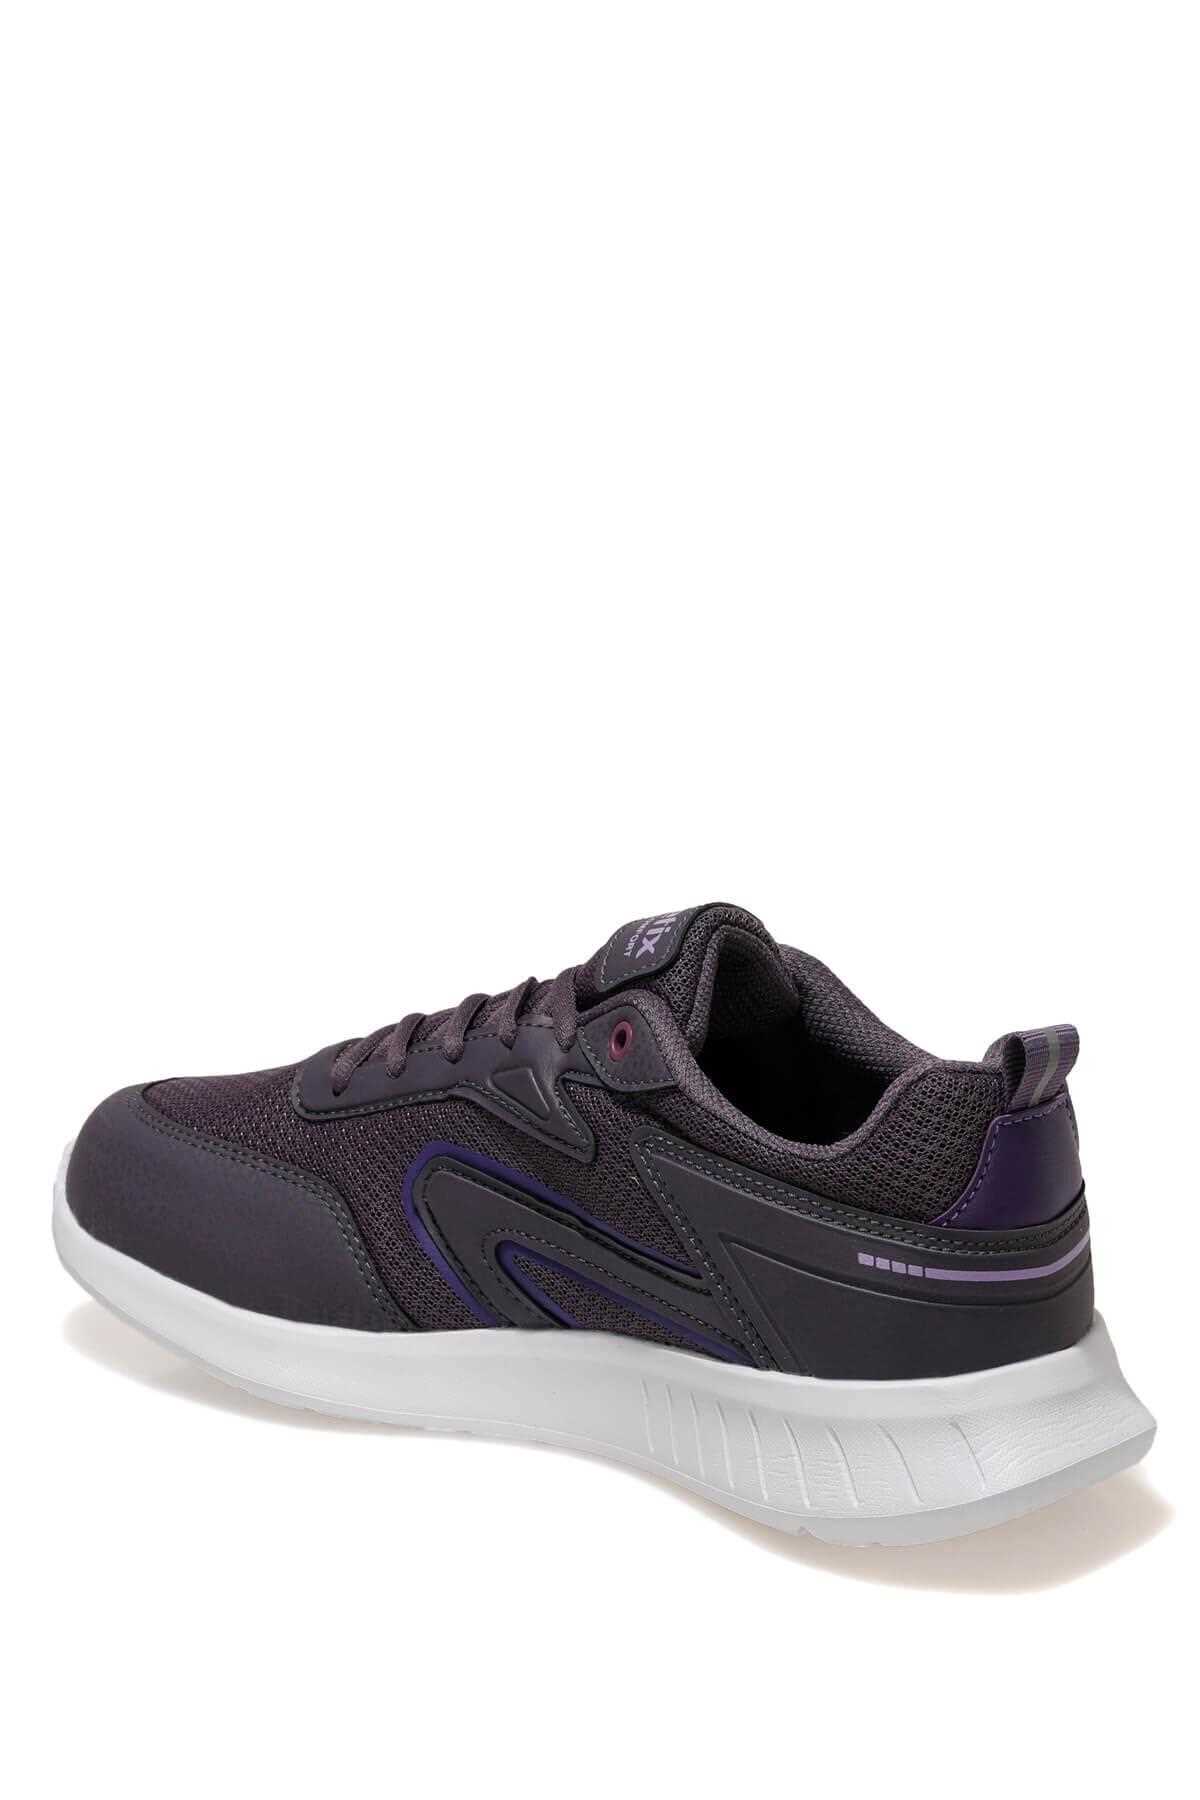 خرید کفش مخصوص پیاده روی زنانه ترک برند کینتیکس رنگ بنفش کد ty96756911